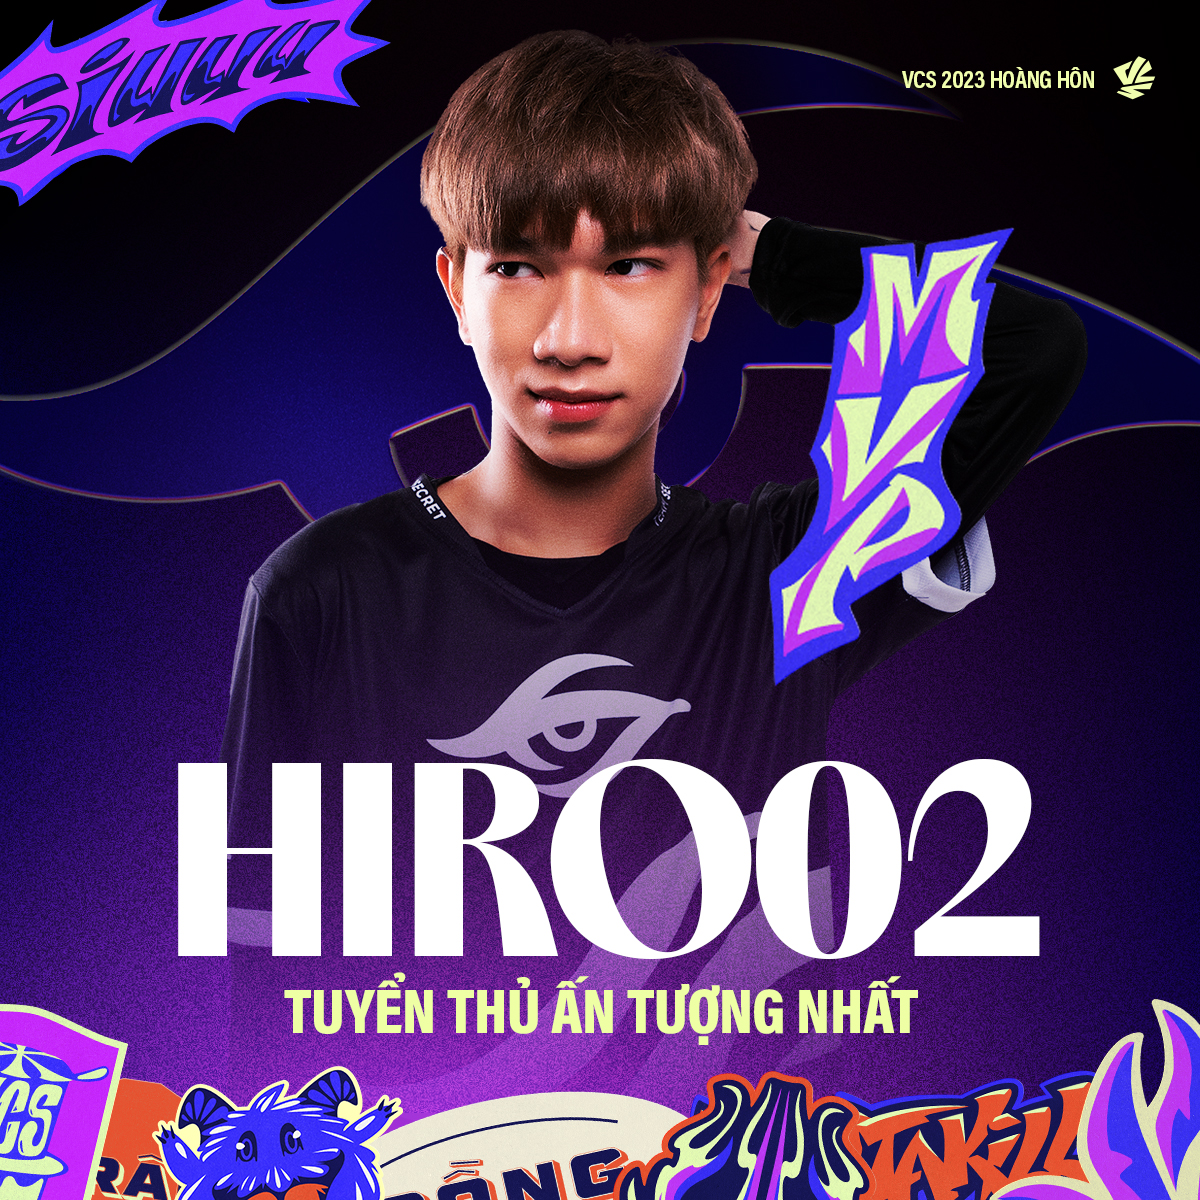 Hiro02 là tuyển thủ ấn tượng nhất VCS Hoàng Hôn 2023